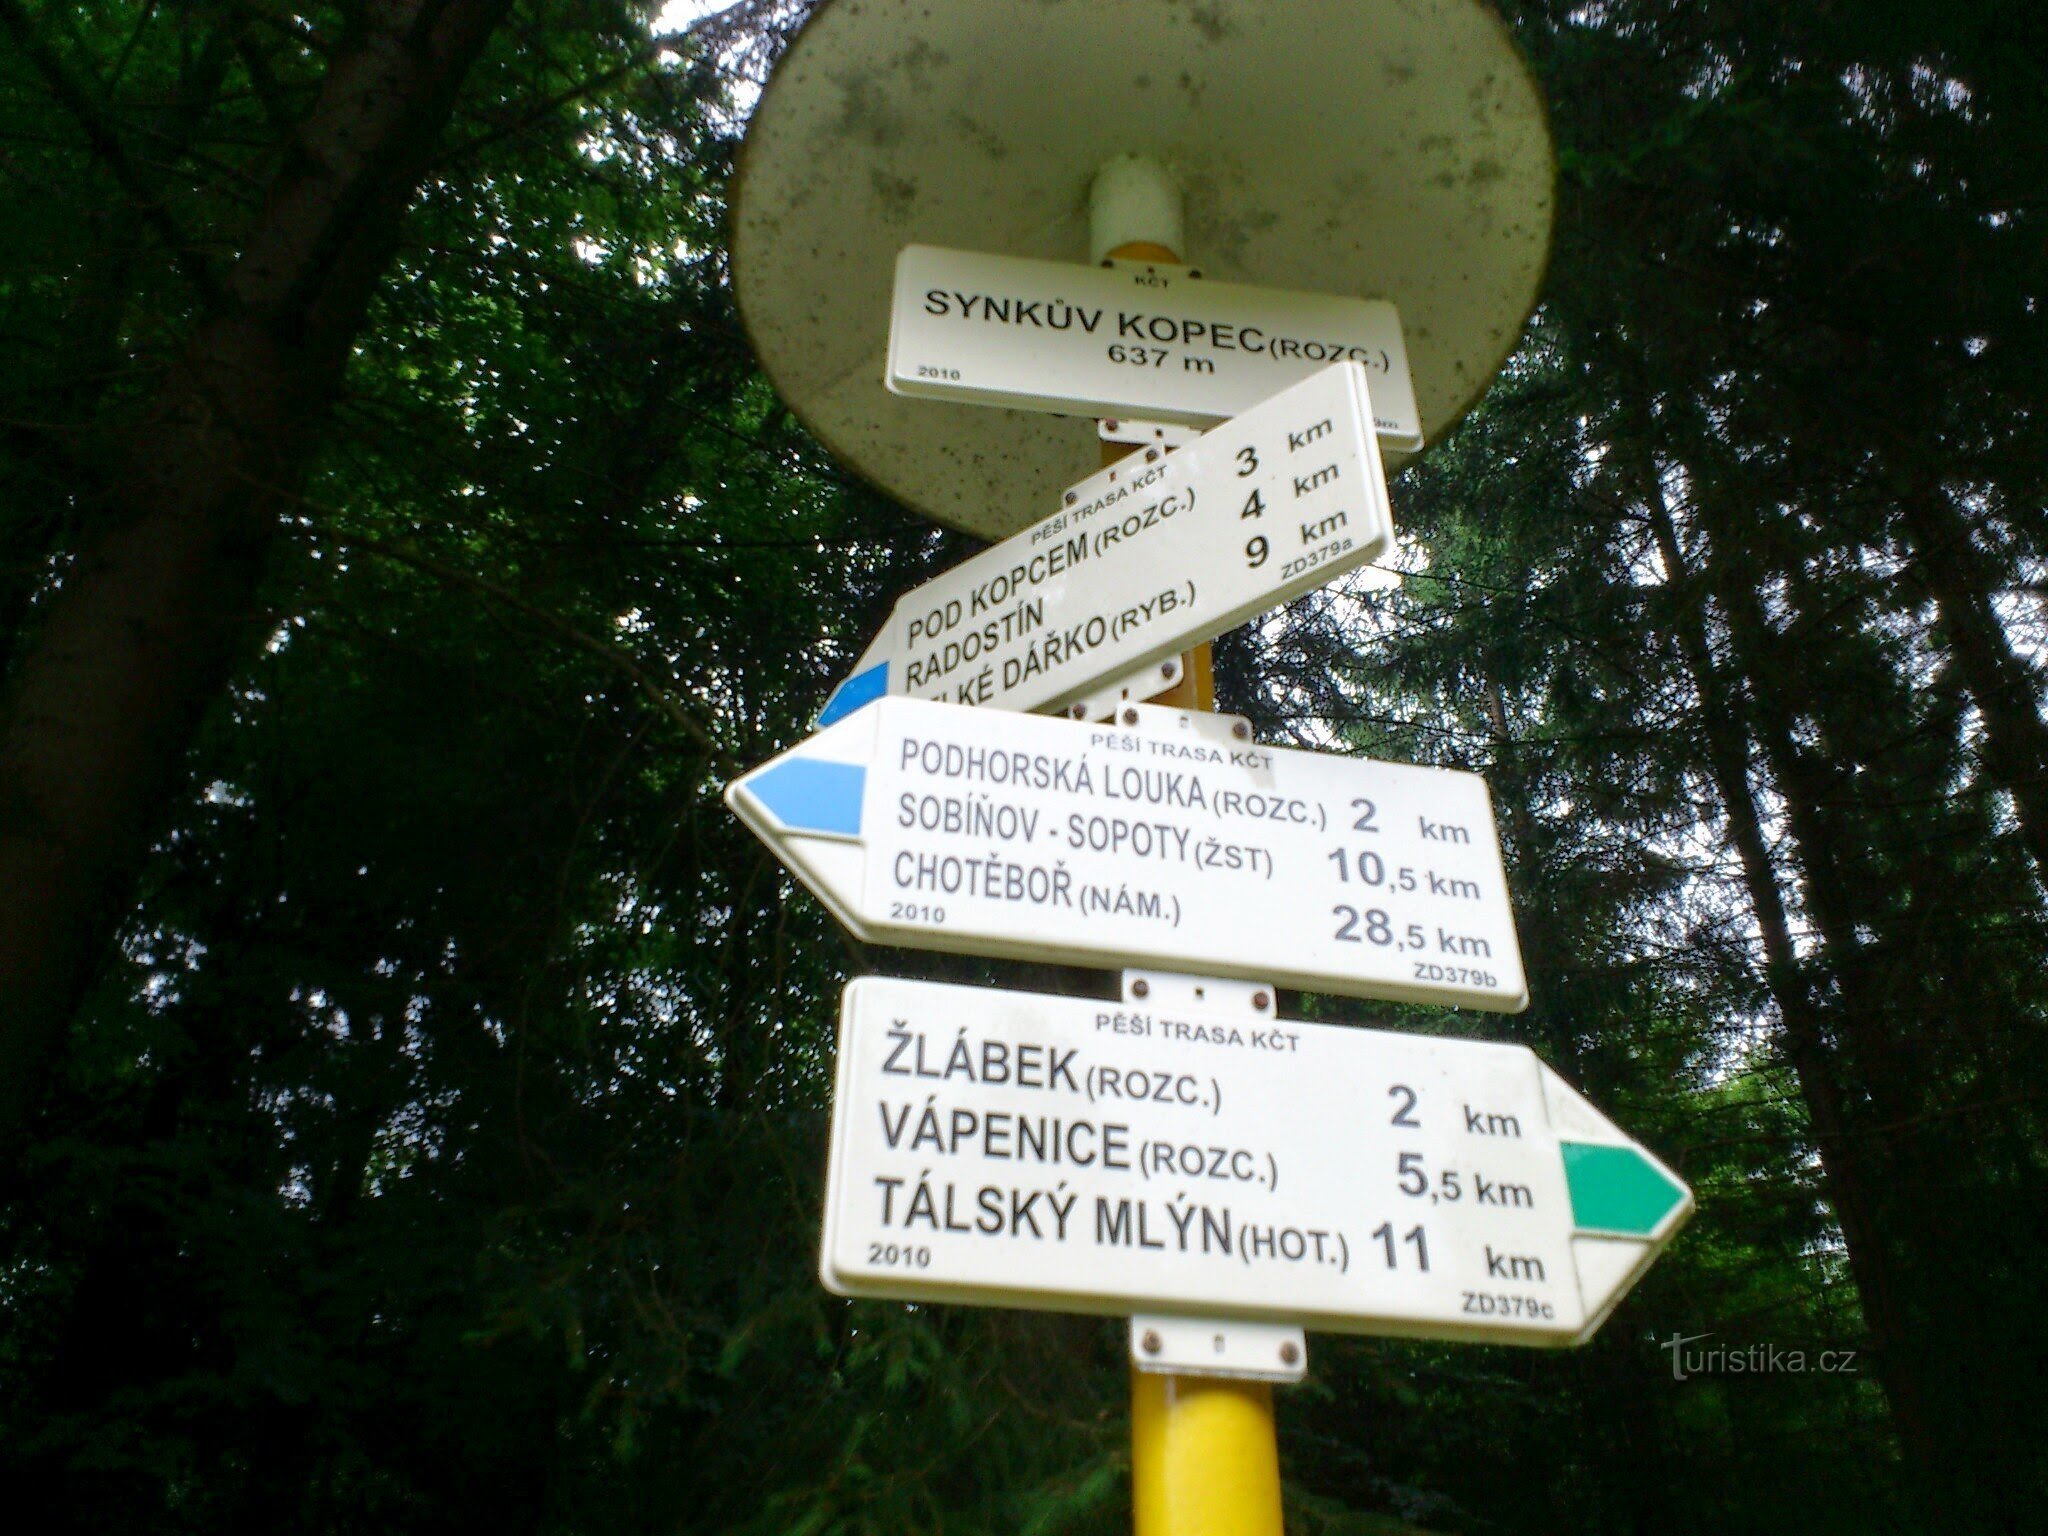 signpost Synkův kopec (signpost)